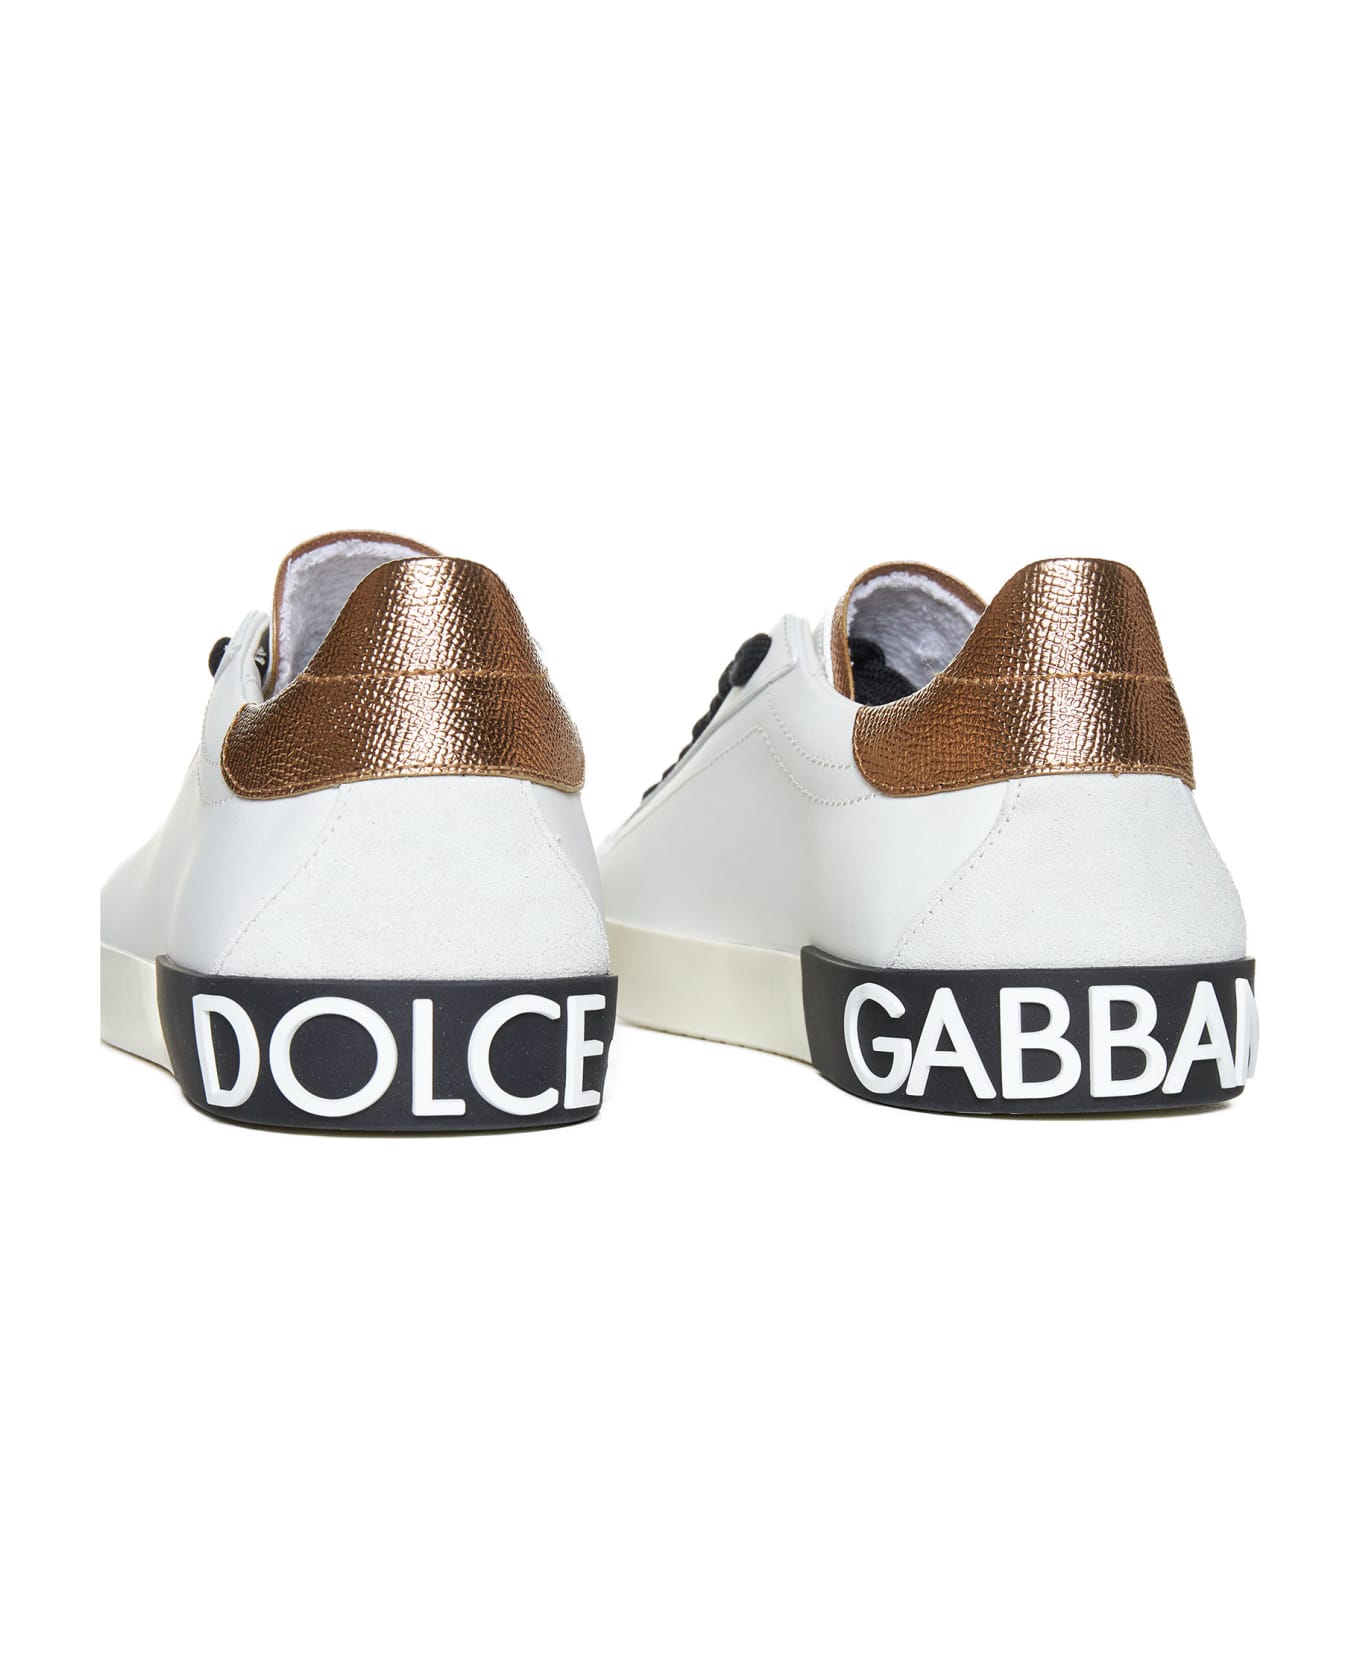 Dolce & Gabbana Portofino Leather Sneakers - White / Gold